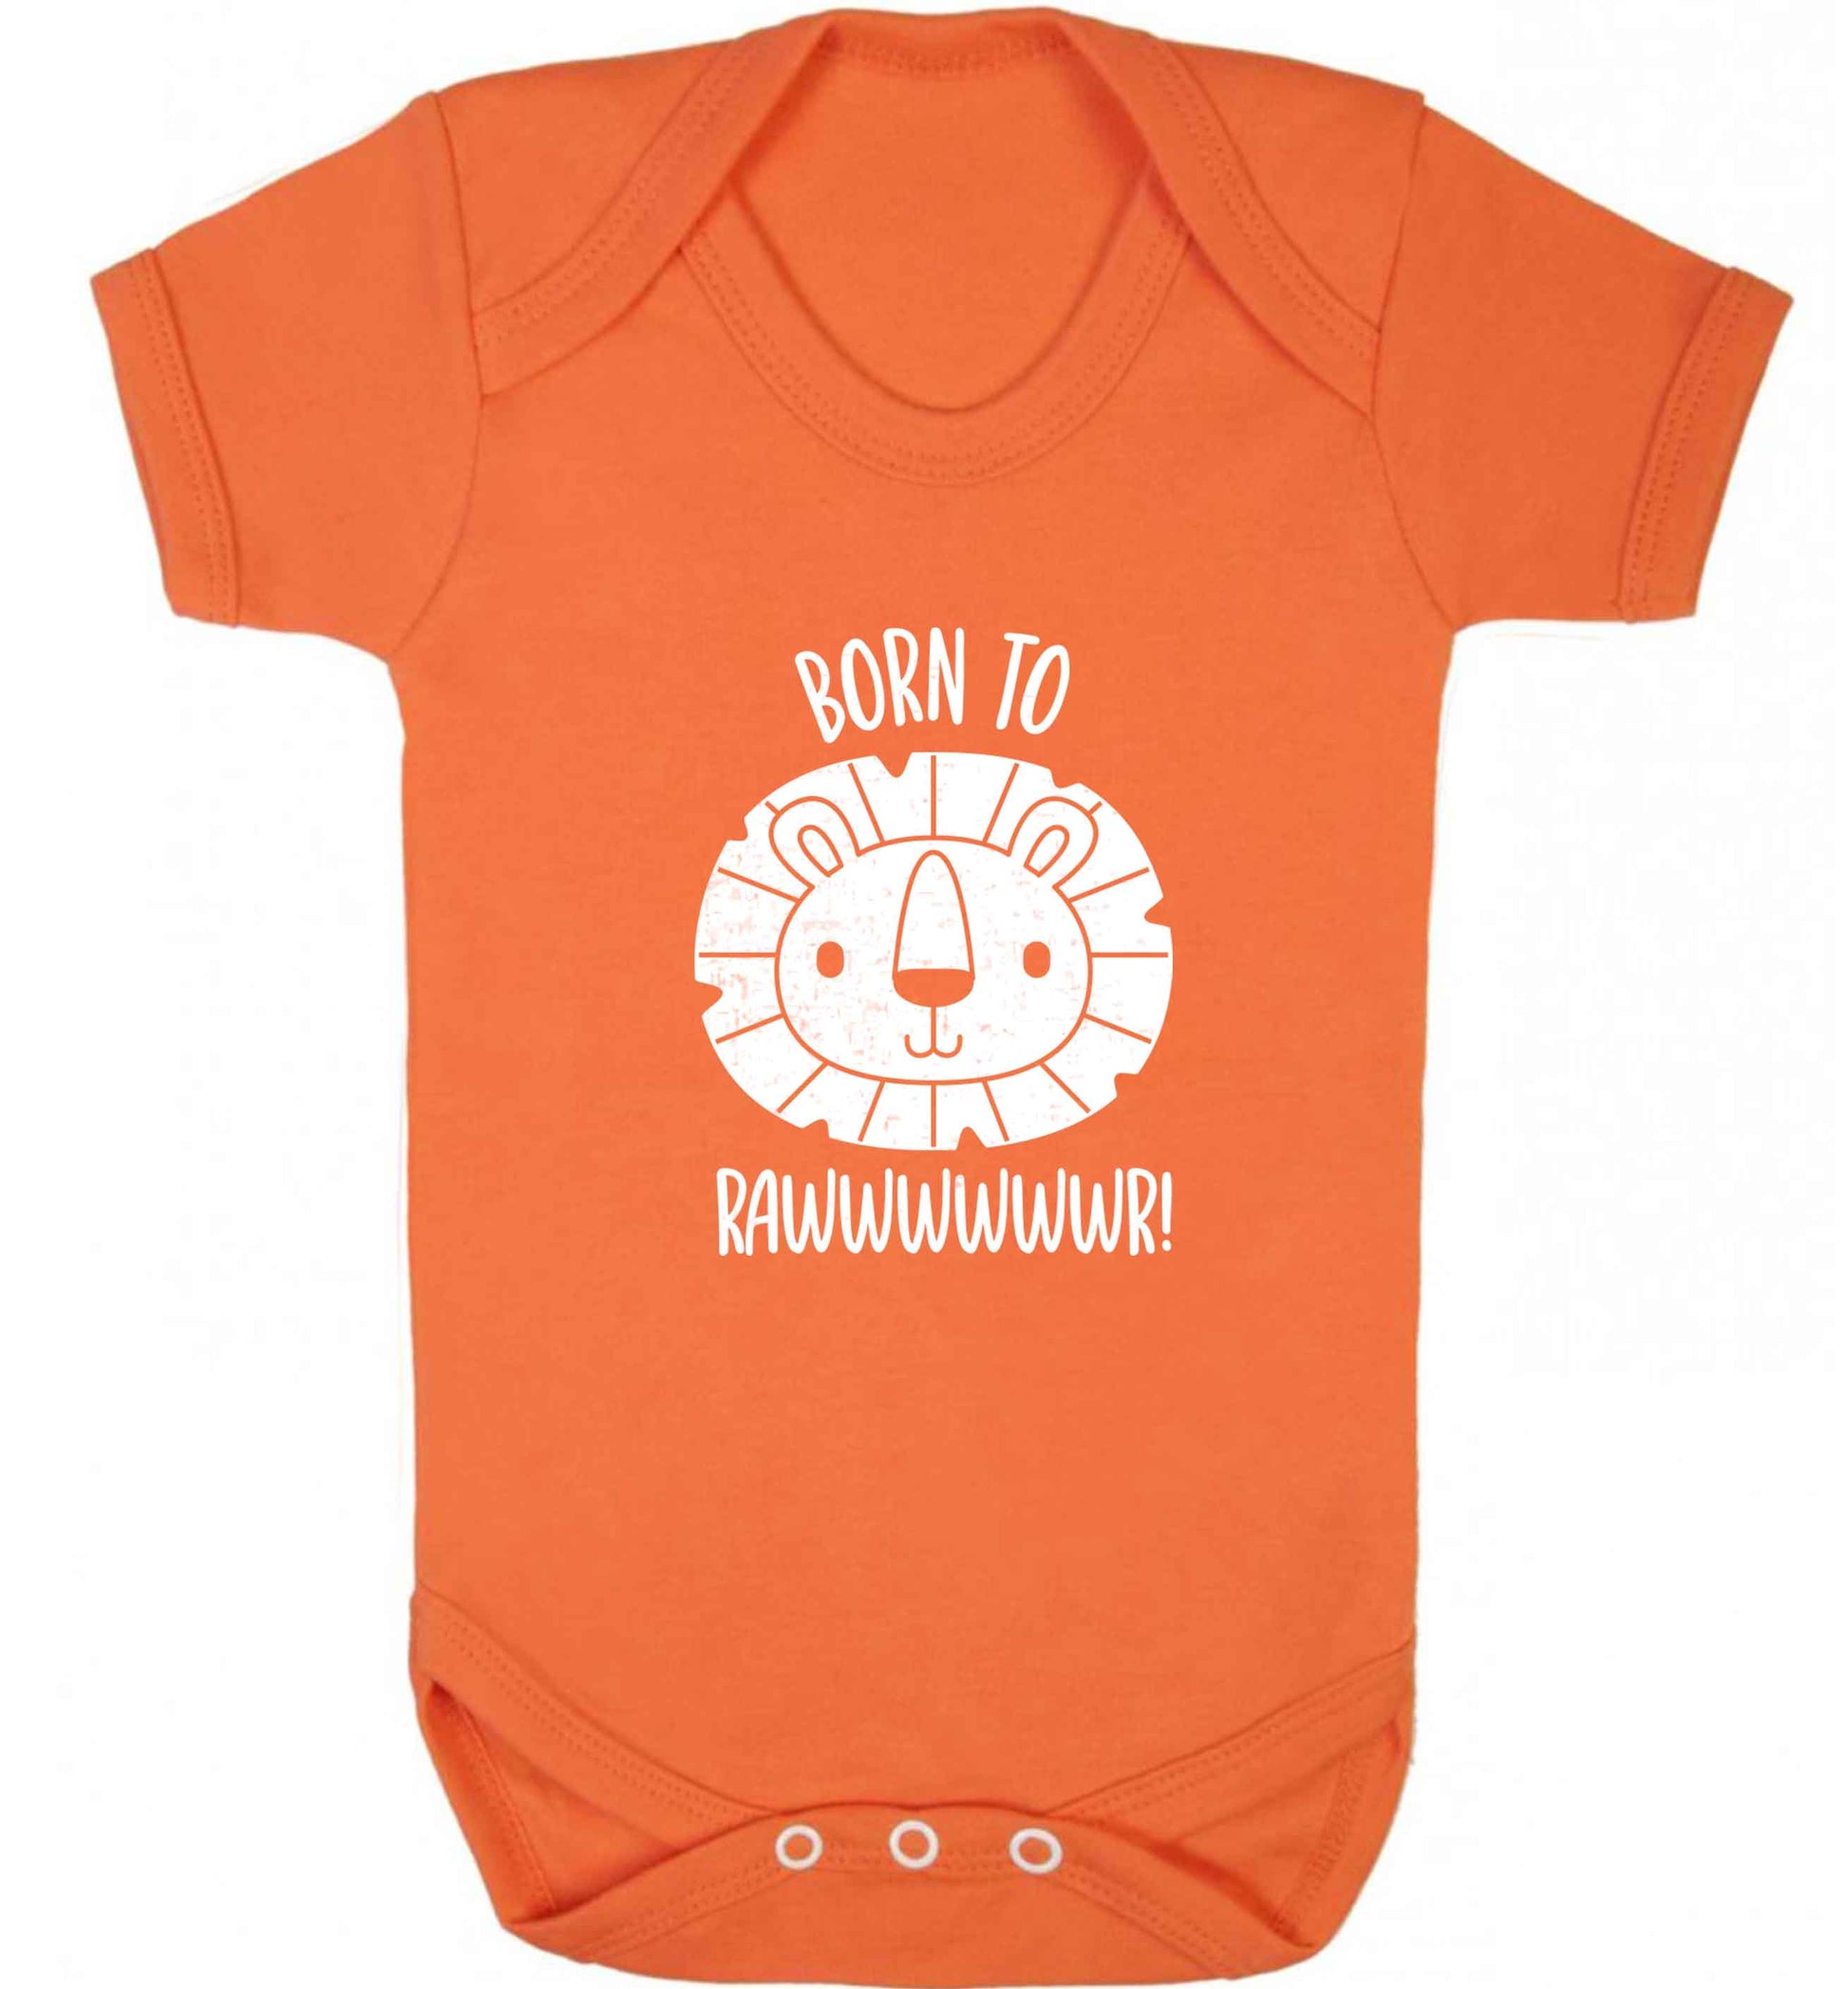 Born to rawr baby vest orange 18-24 months